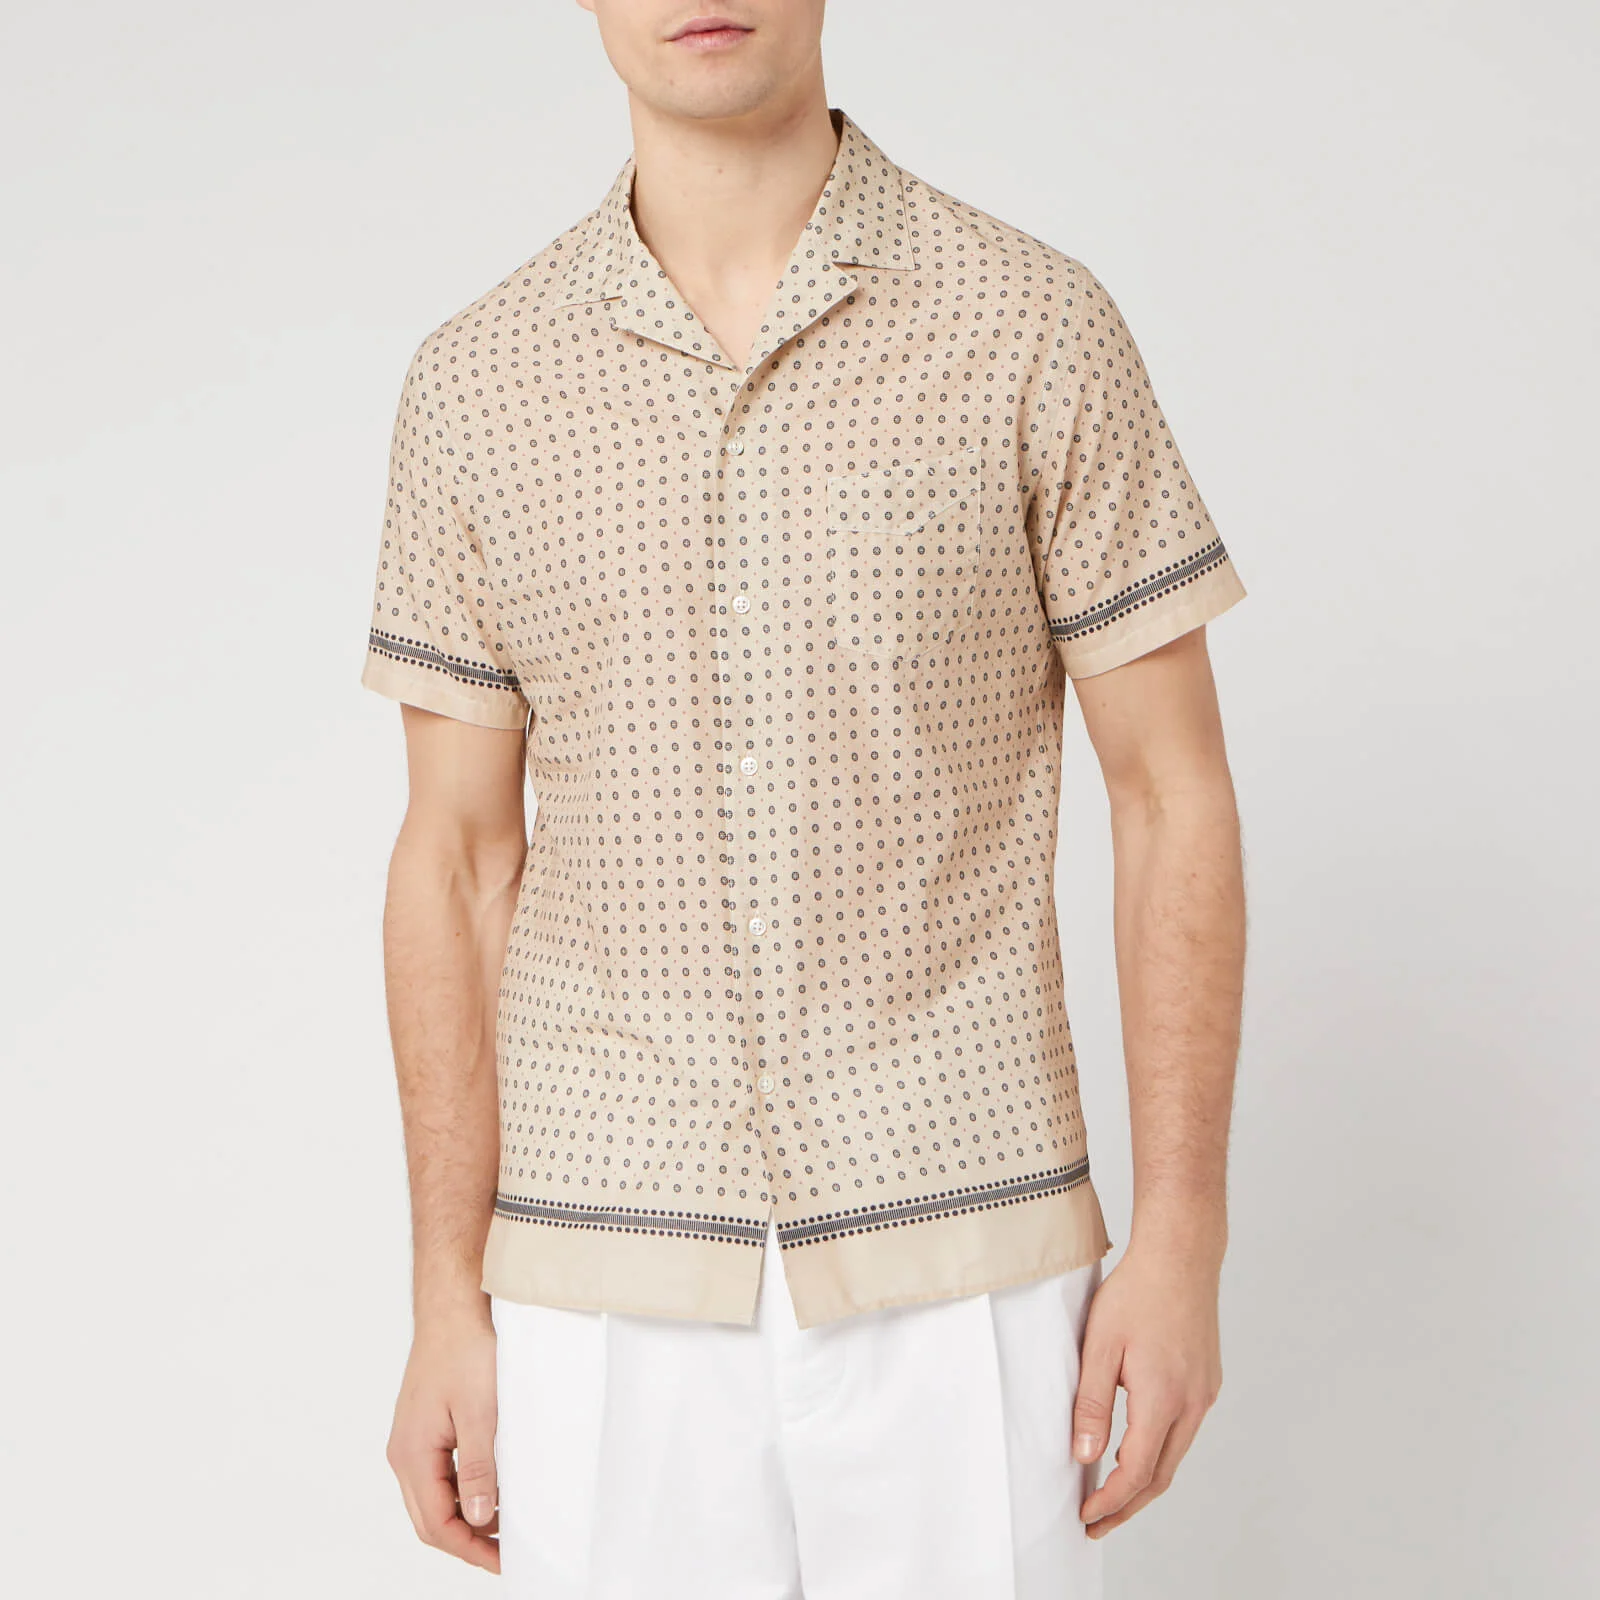 Officine Générale Men's Dario Placed Dots Shirt - Multi Image 1